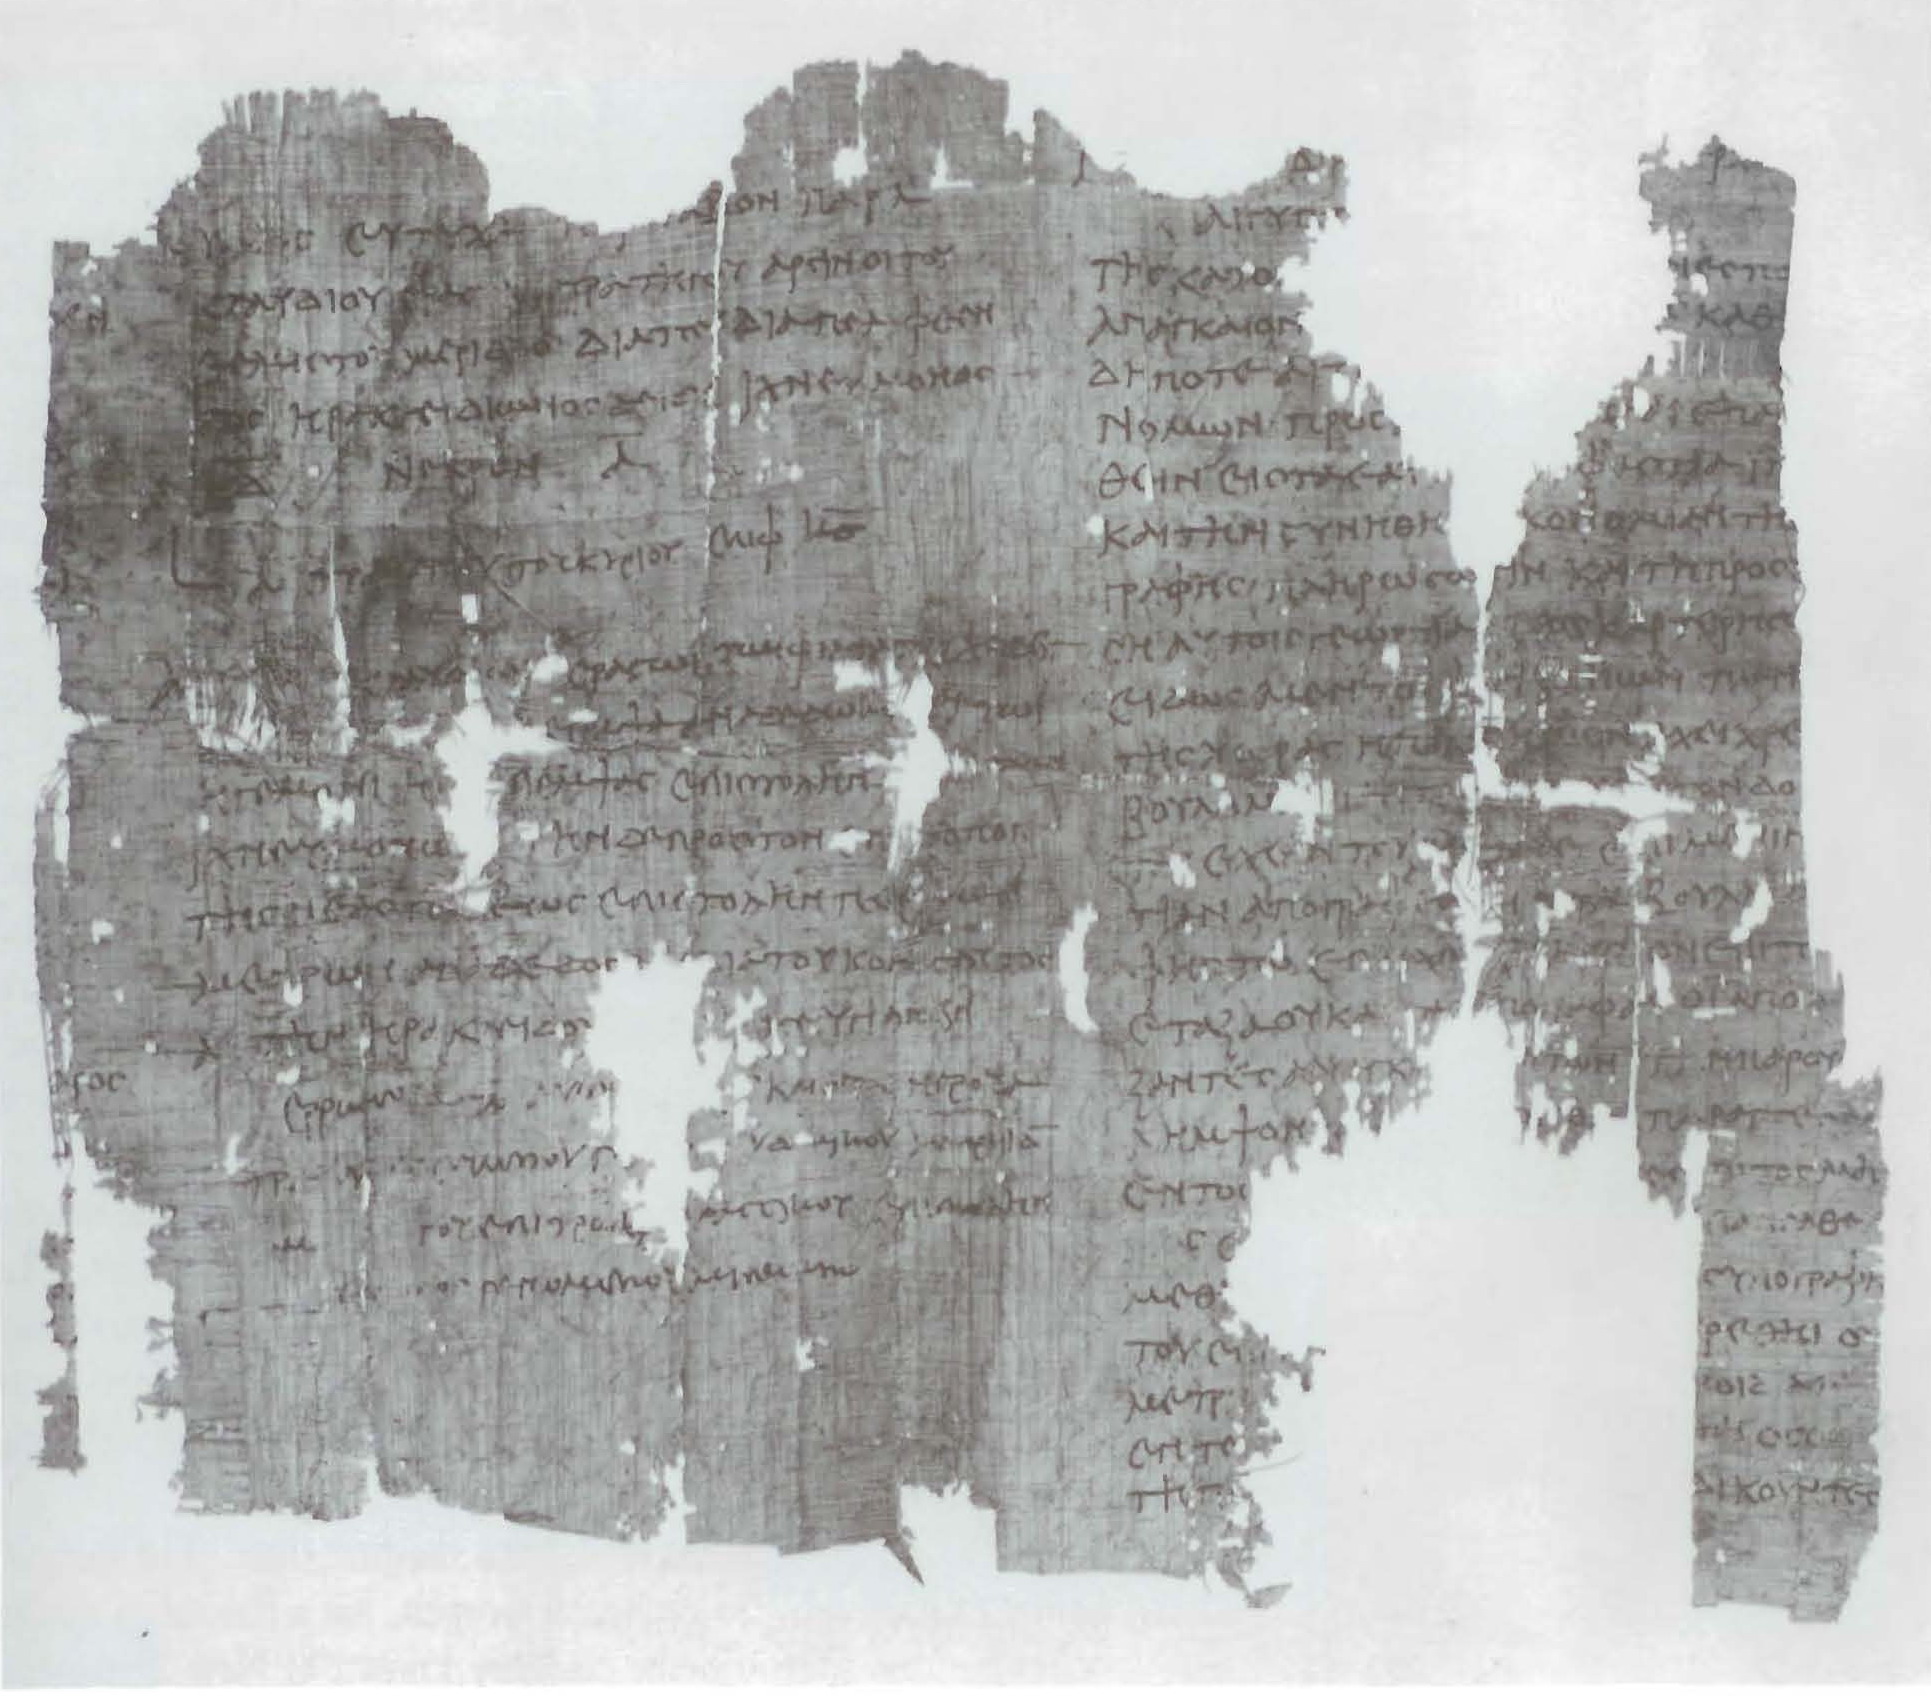 Papyrus_Census_Order